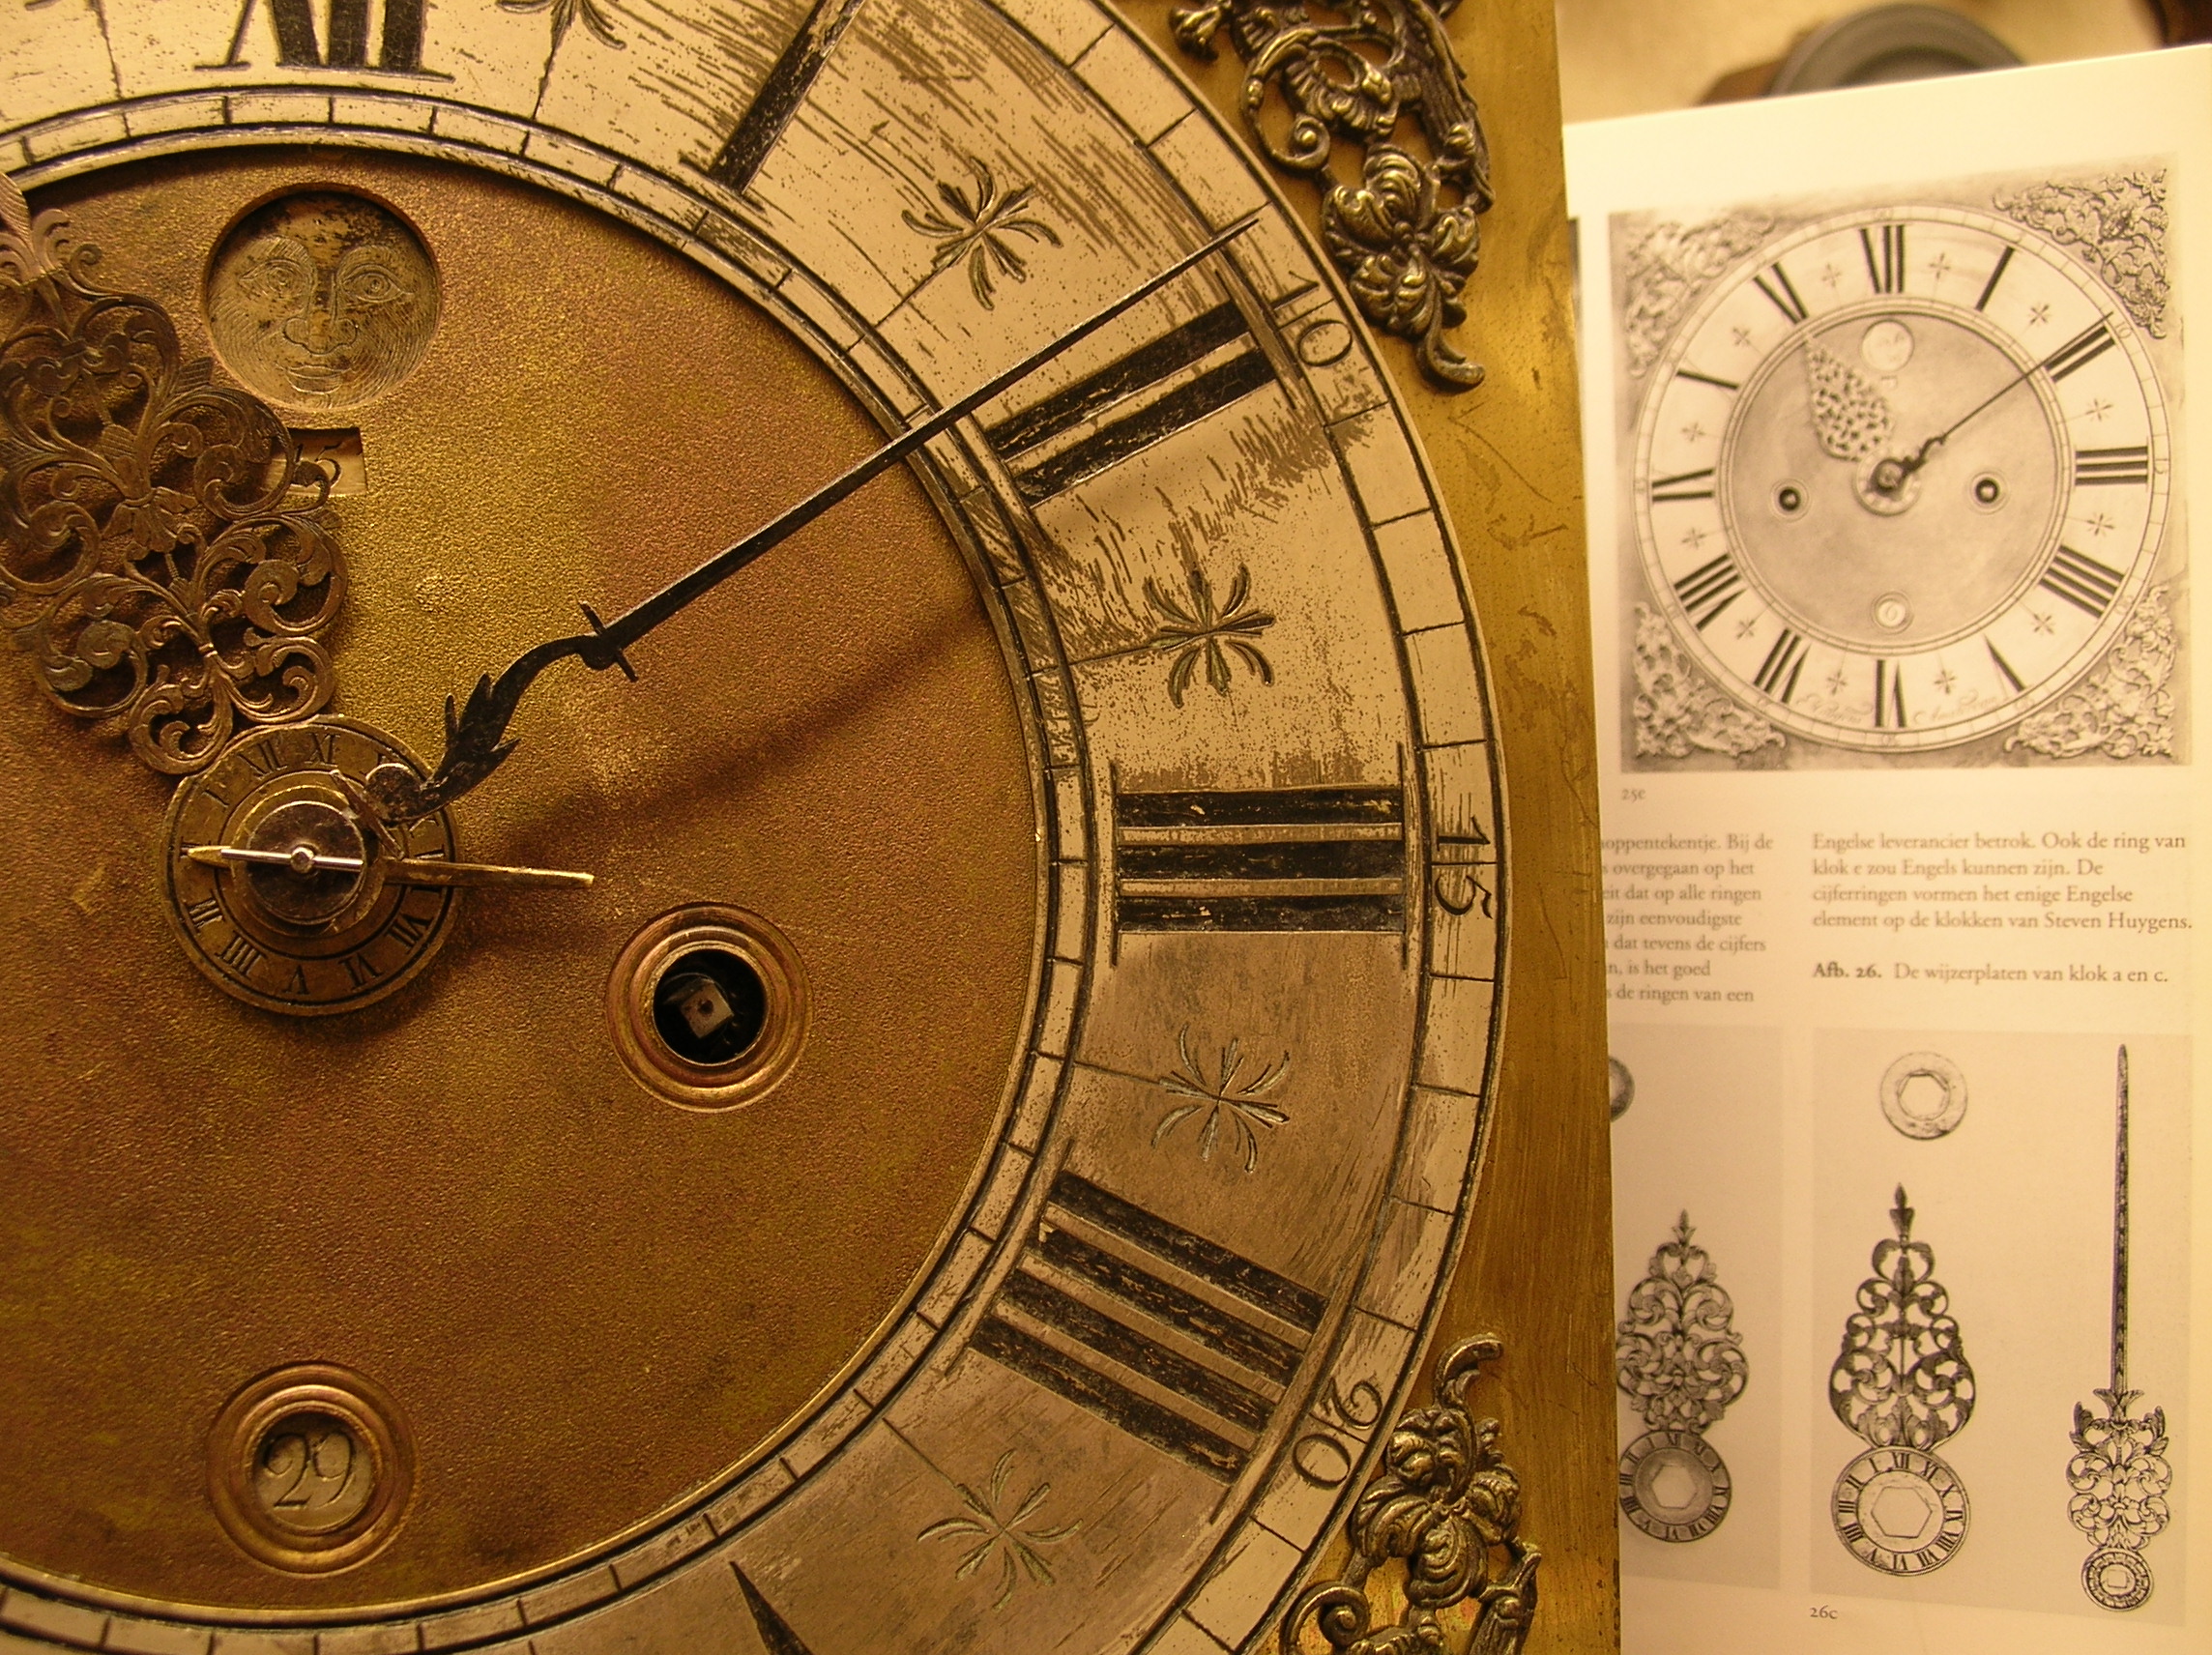 Minachting Kritisch band Informatie: Steven Huygens klok 1690 - Henk Houkes - de klokkenmaker die  tijd maakt